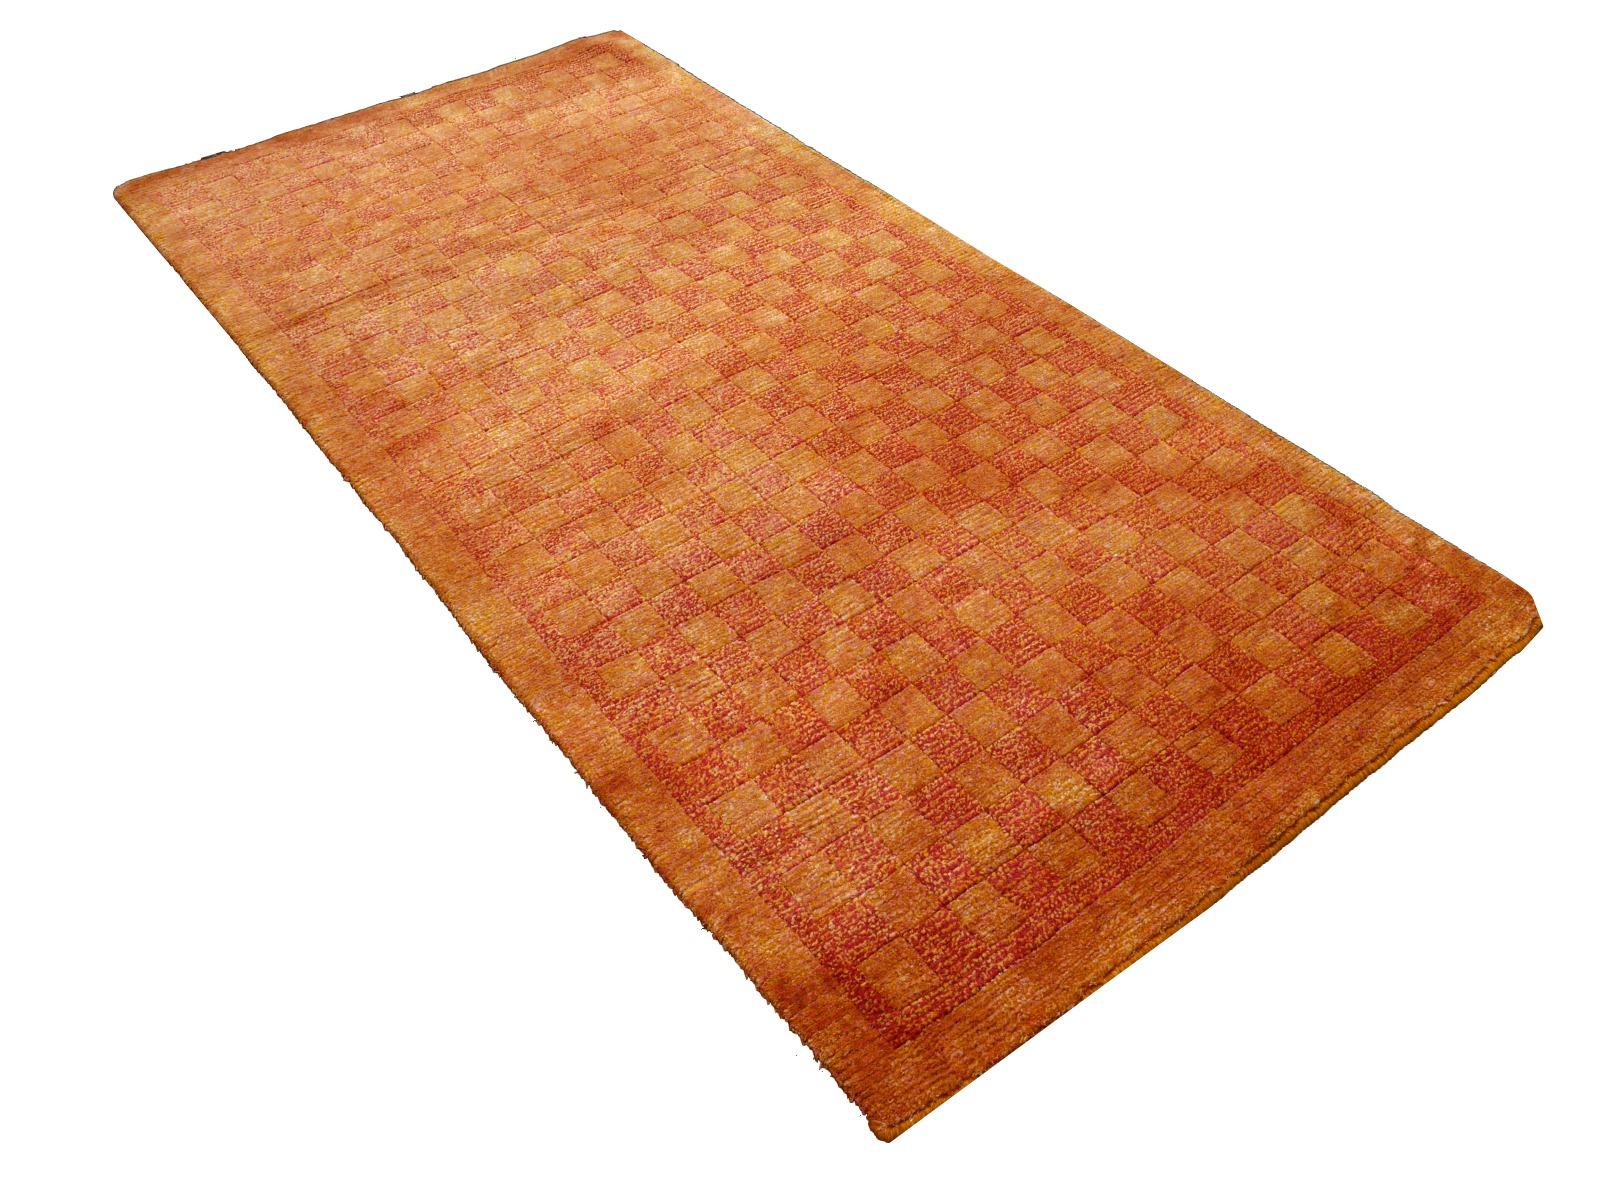 Ein wunderschöner tibetischer Teppich im Schachbrettmuster.
Dieses traditionelle Schachbrettmuster findet sich typischerweise auf antiken Teppichen namens Khaden. Er beschreibt einen kleinen Teppich von etwa 3 x 6 Fuß, der in Tibet zur Dekoration